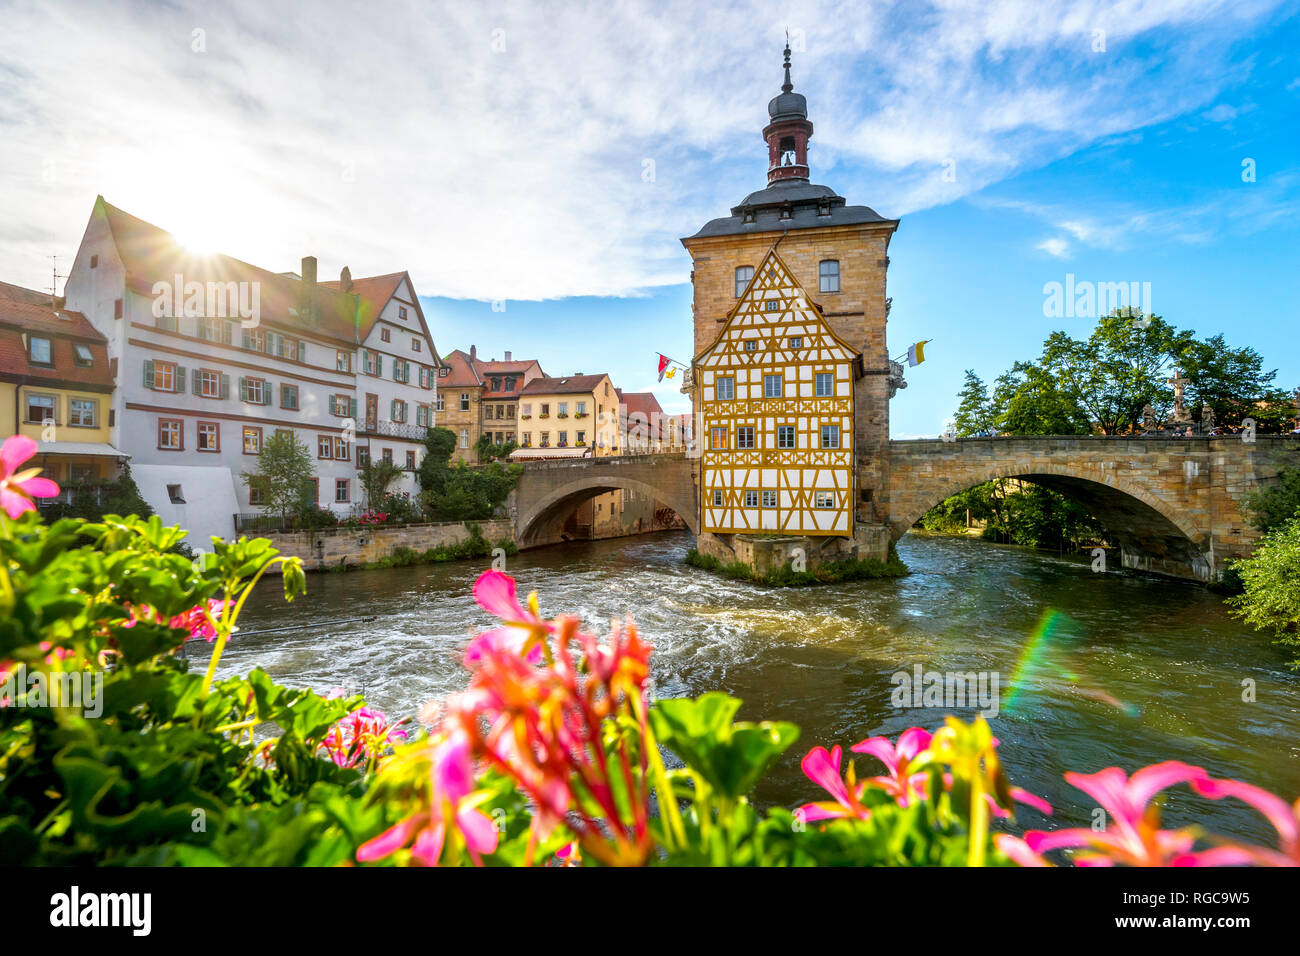 Germany, Bavaria, Bamberg, Stock Photo